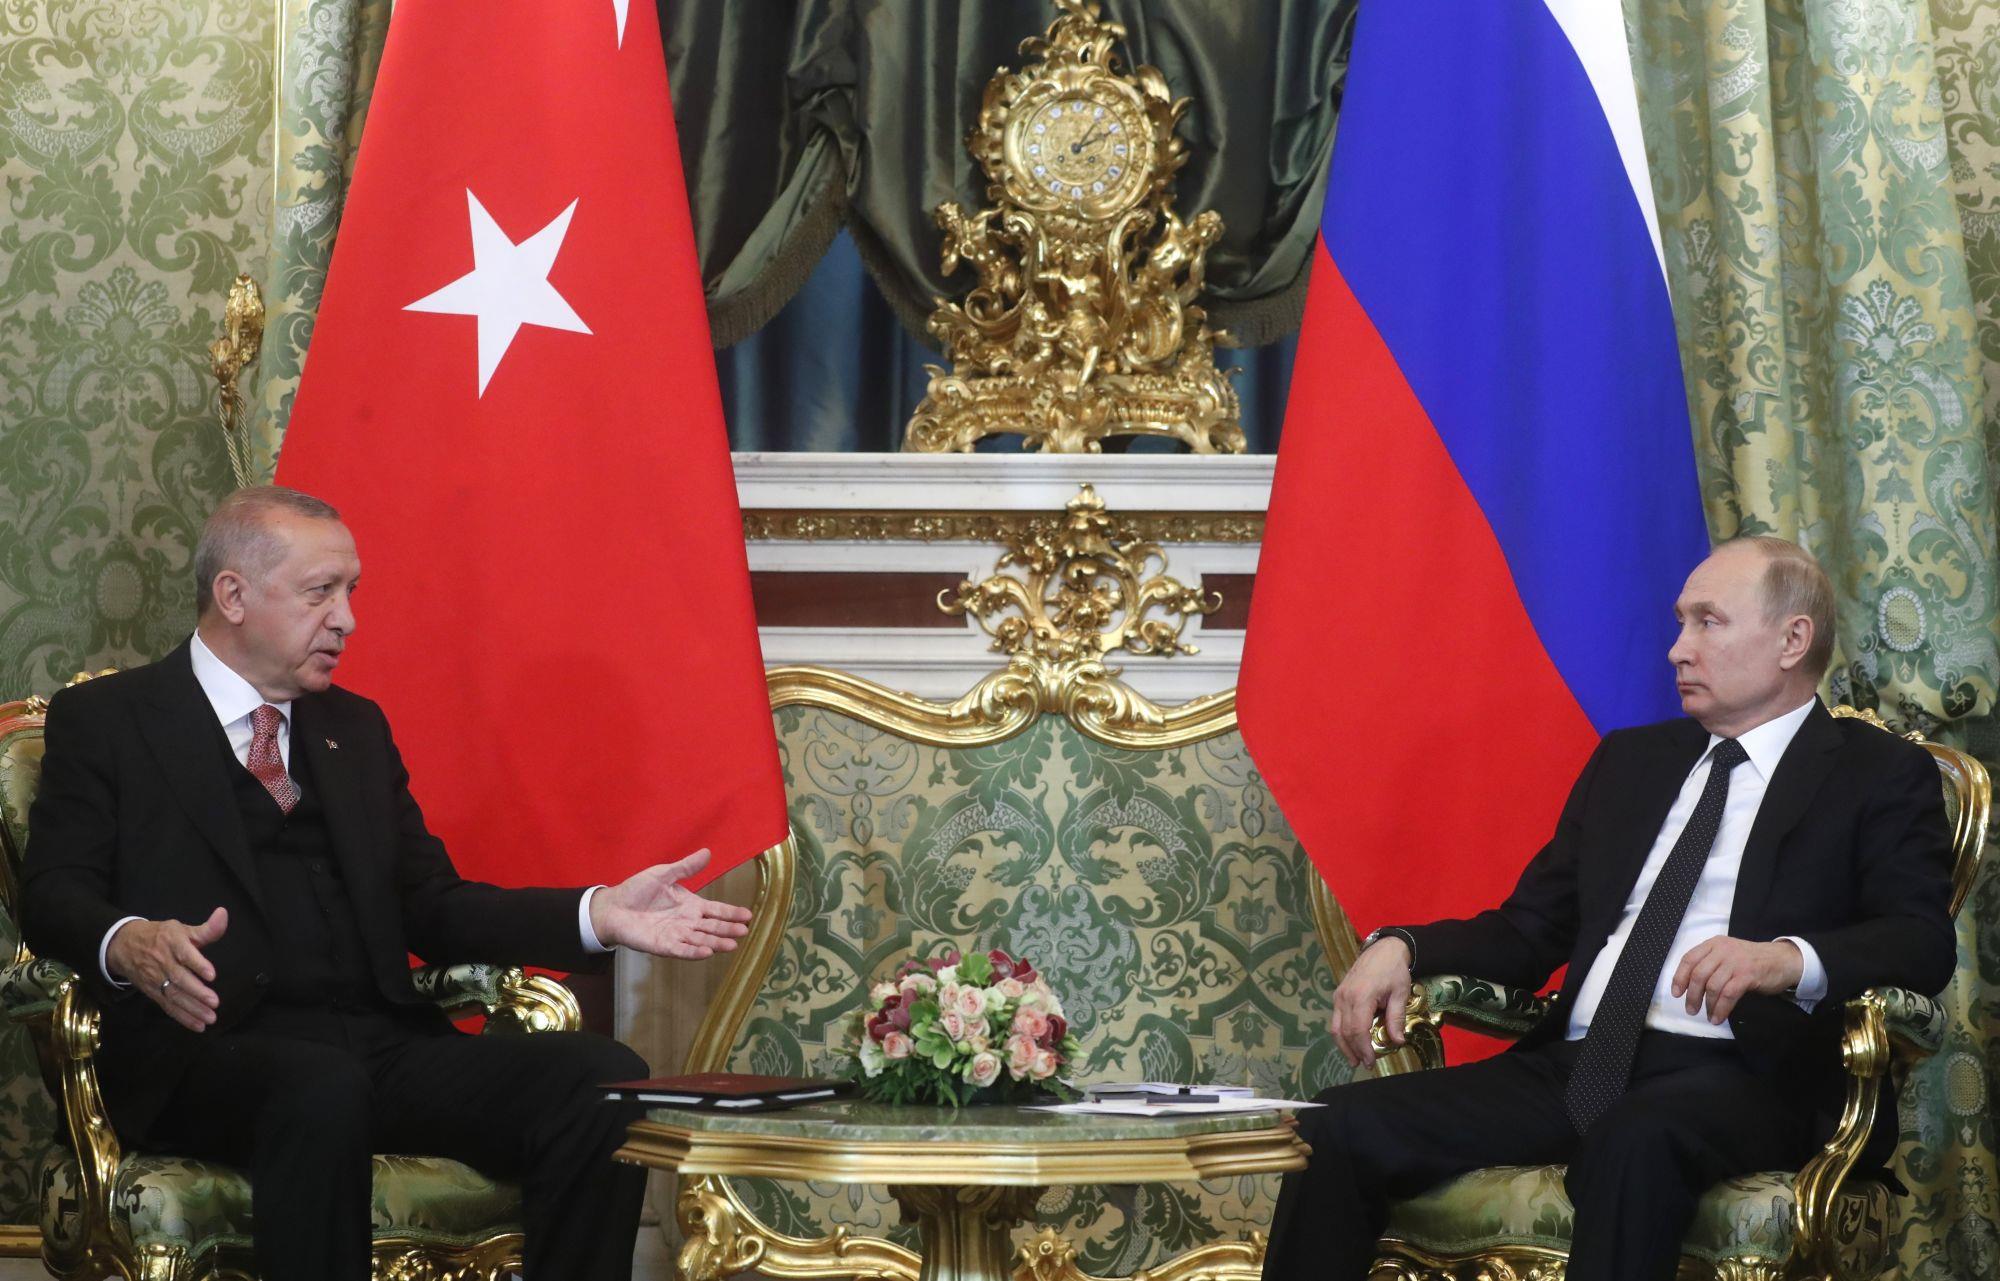 Quan hệ Nga-Thổ Nhĩ Kỳ (Hình mẫu của ngoại giao thực dụng)